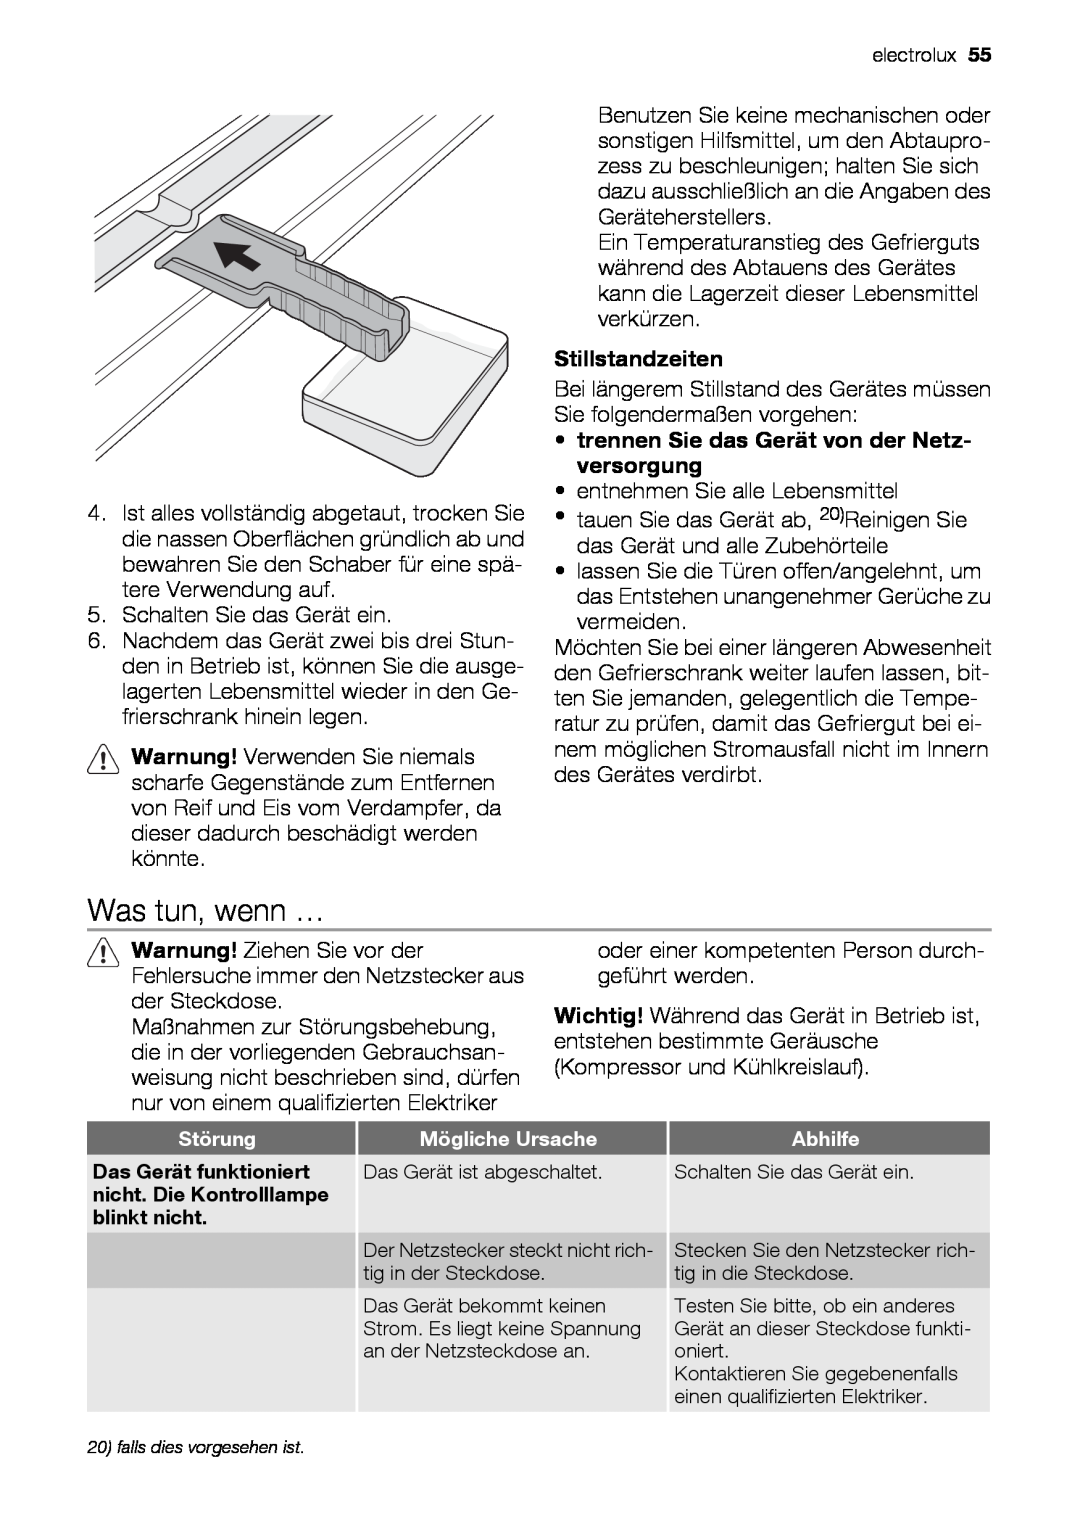 Electrolux EUN12510 user manual Was tun, wenn …, Stillstandzeiten, trennen Sie das Gerät von der Netz- versorgung 